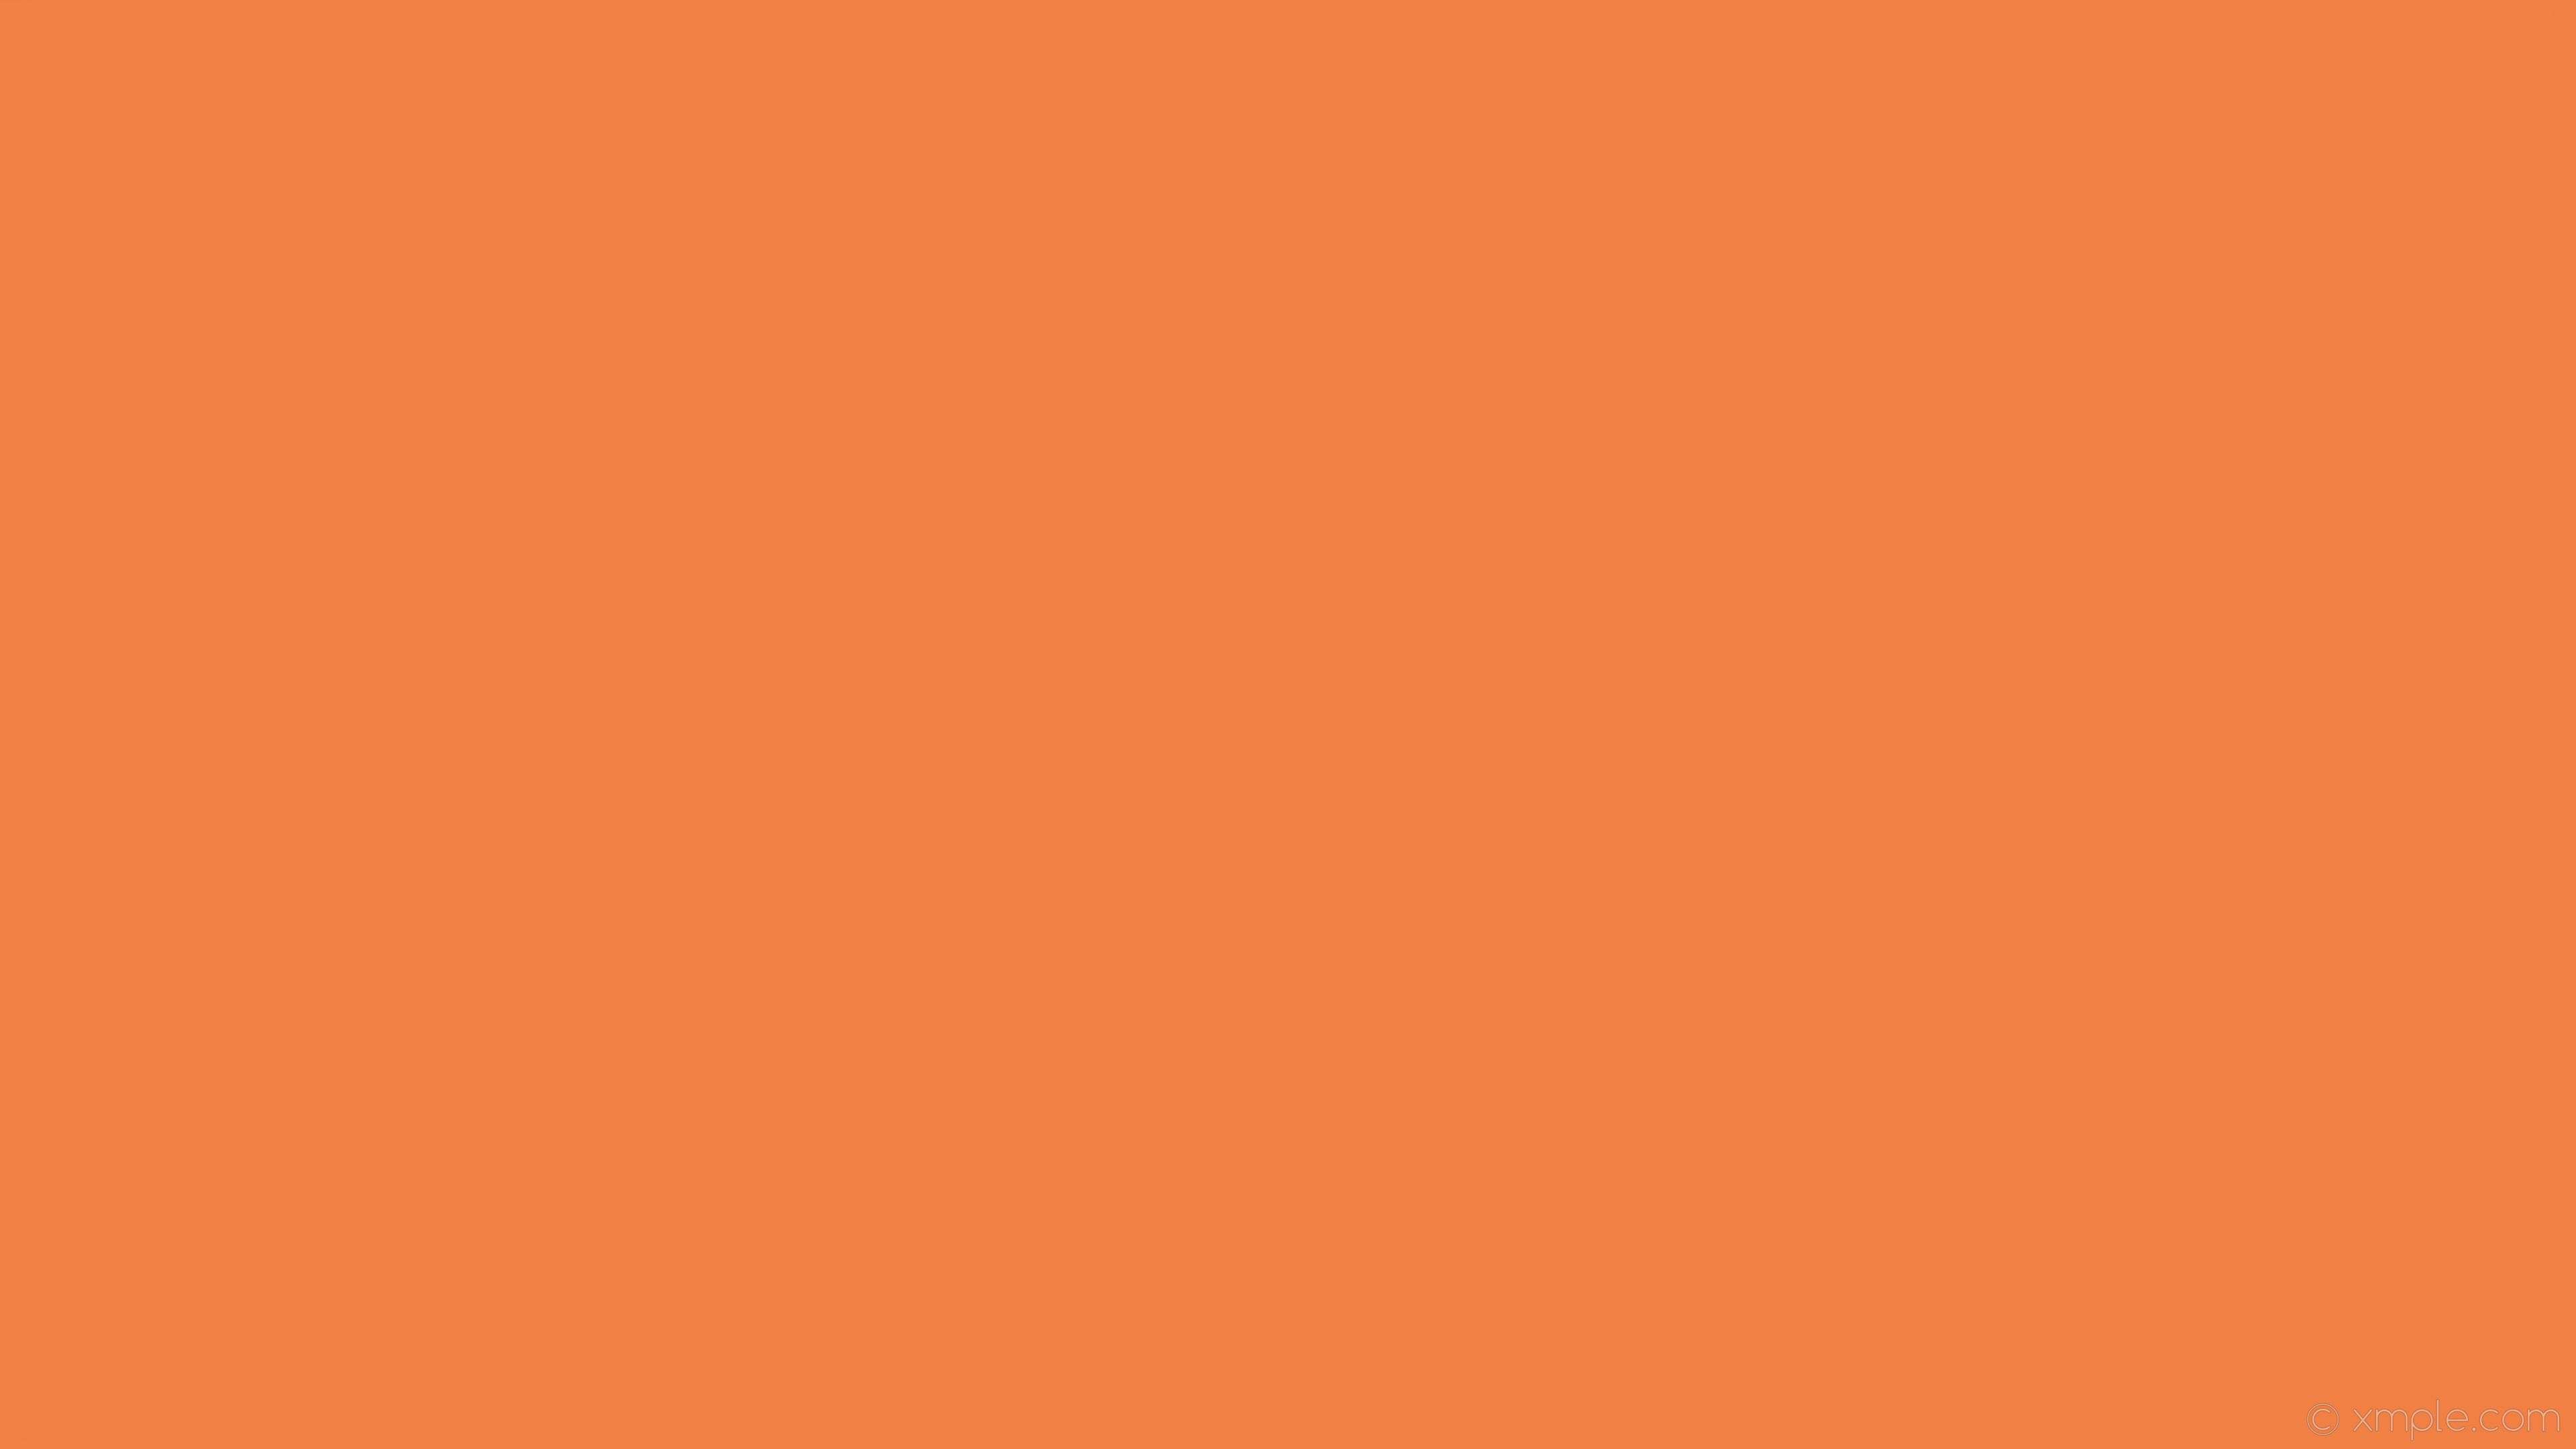 Màu Cam Đậm: Màu cam đậm đang là xu hướng mới cho năm nay, mang đến sự tươi sáng và nổi bật cho không gian của bạn. Bạn có thể áp dụng màu này trong trang trí nhà cửa hoặc các món đồ thời trang để thể hiện cá tính mạnh mẽ của mình. Hãy xem hình ảnh liên quan để cảm nhận sự hài hòa và phong cách của màu cam đậm!